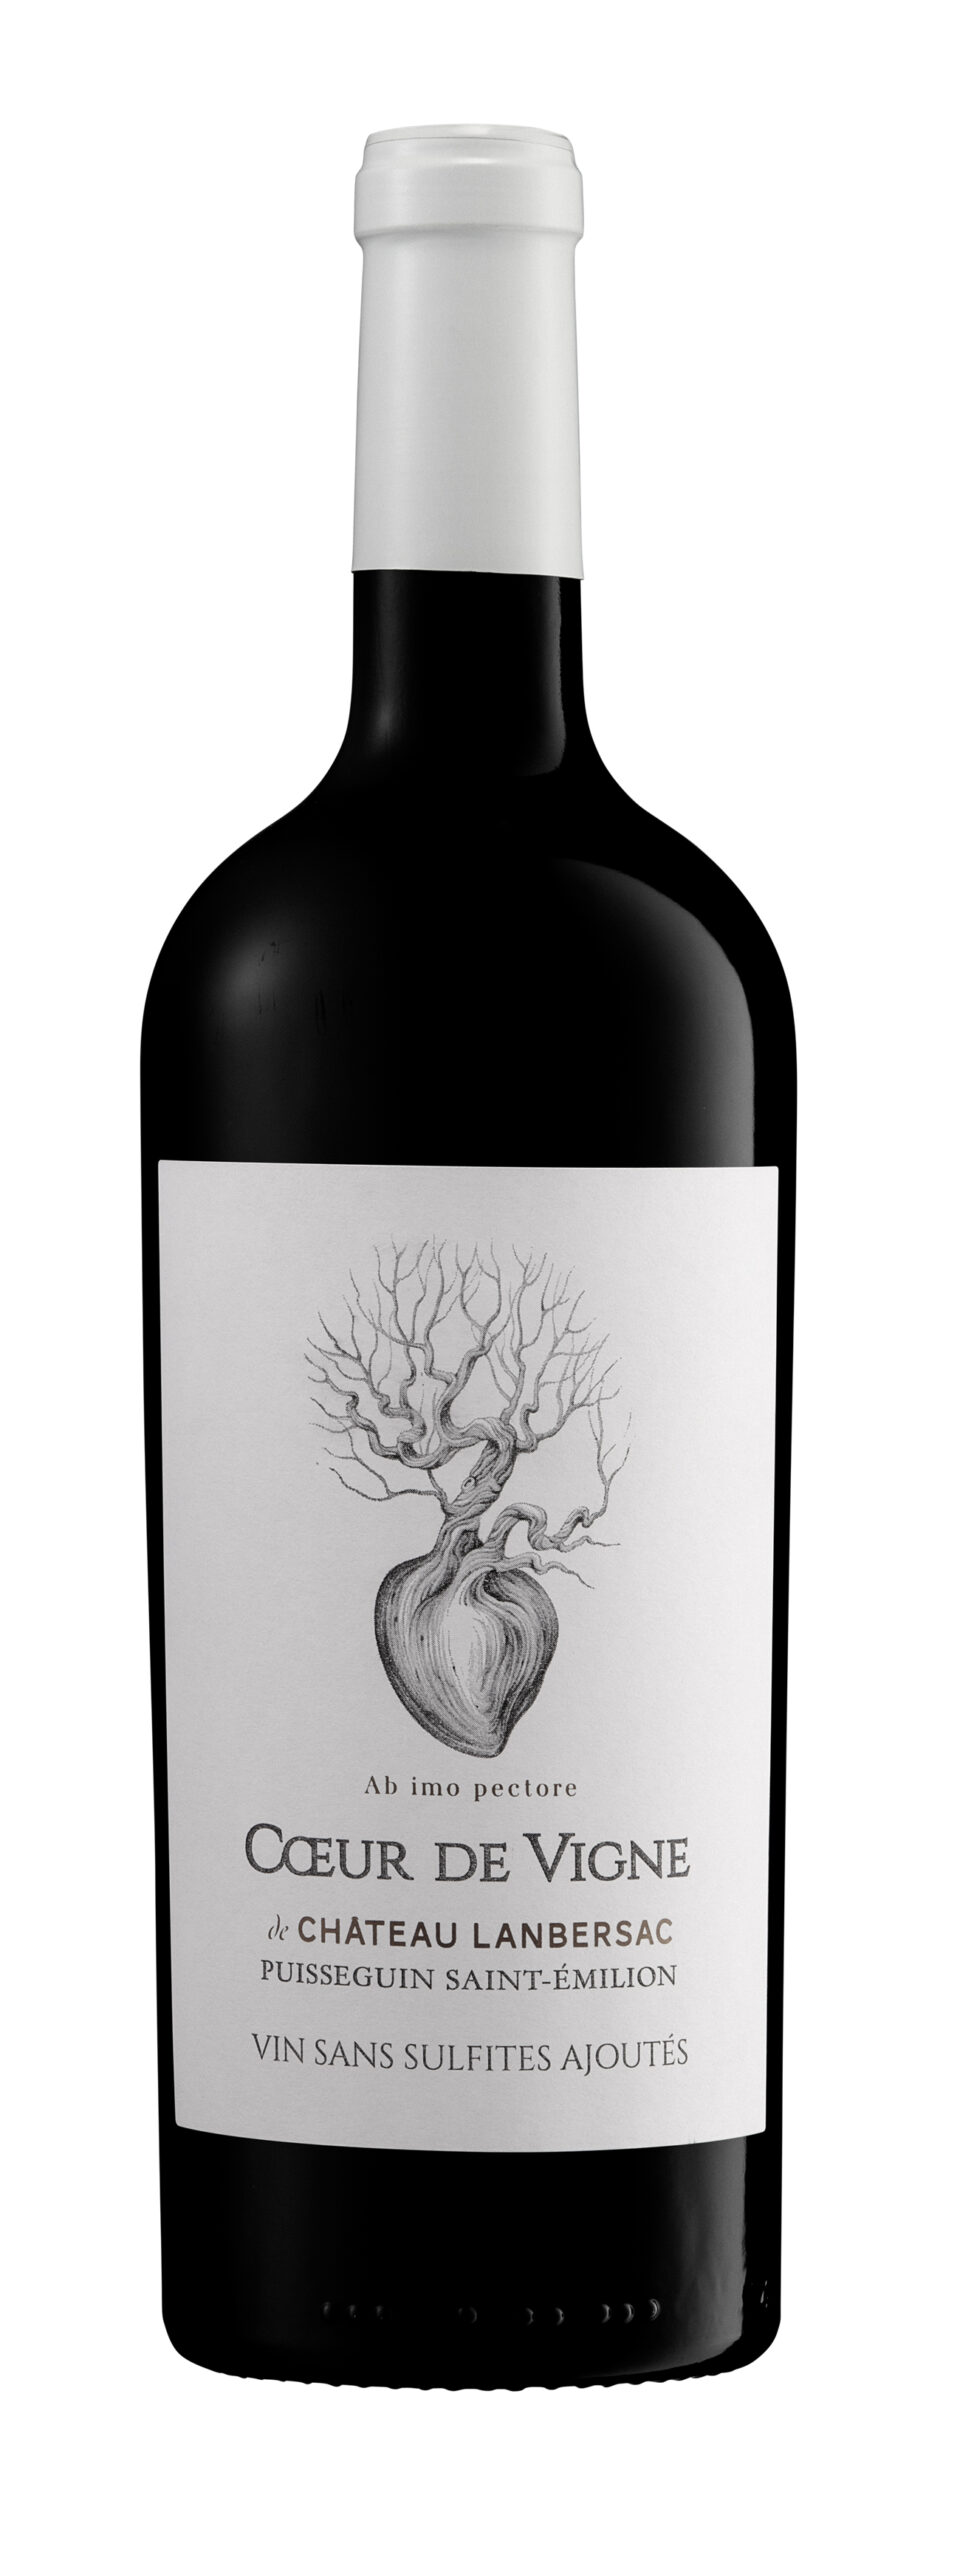 Coeur de vigne by Château Lanbersac – Puisseguin Saint-Emilion